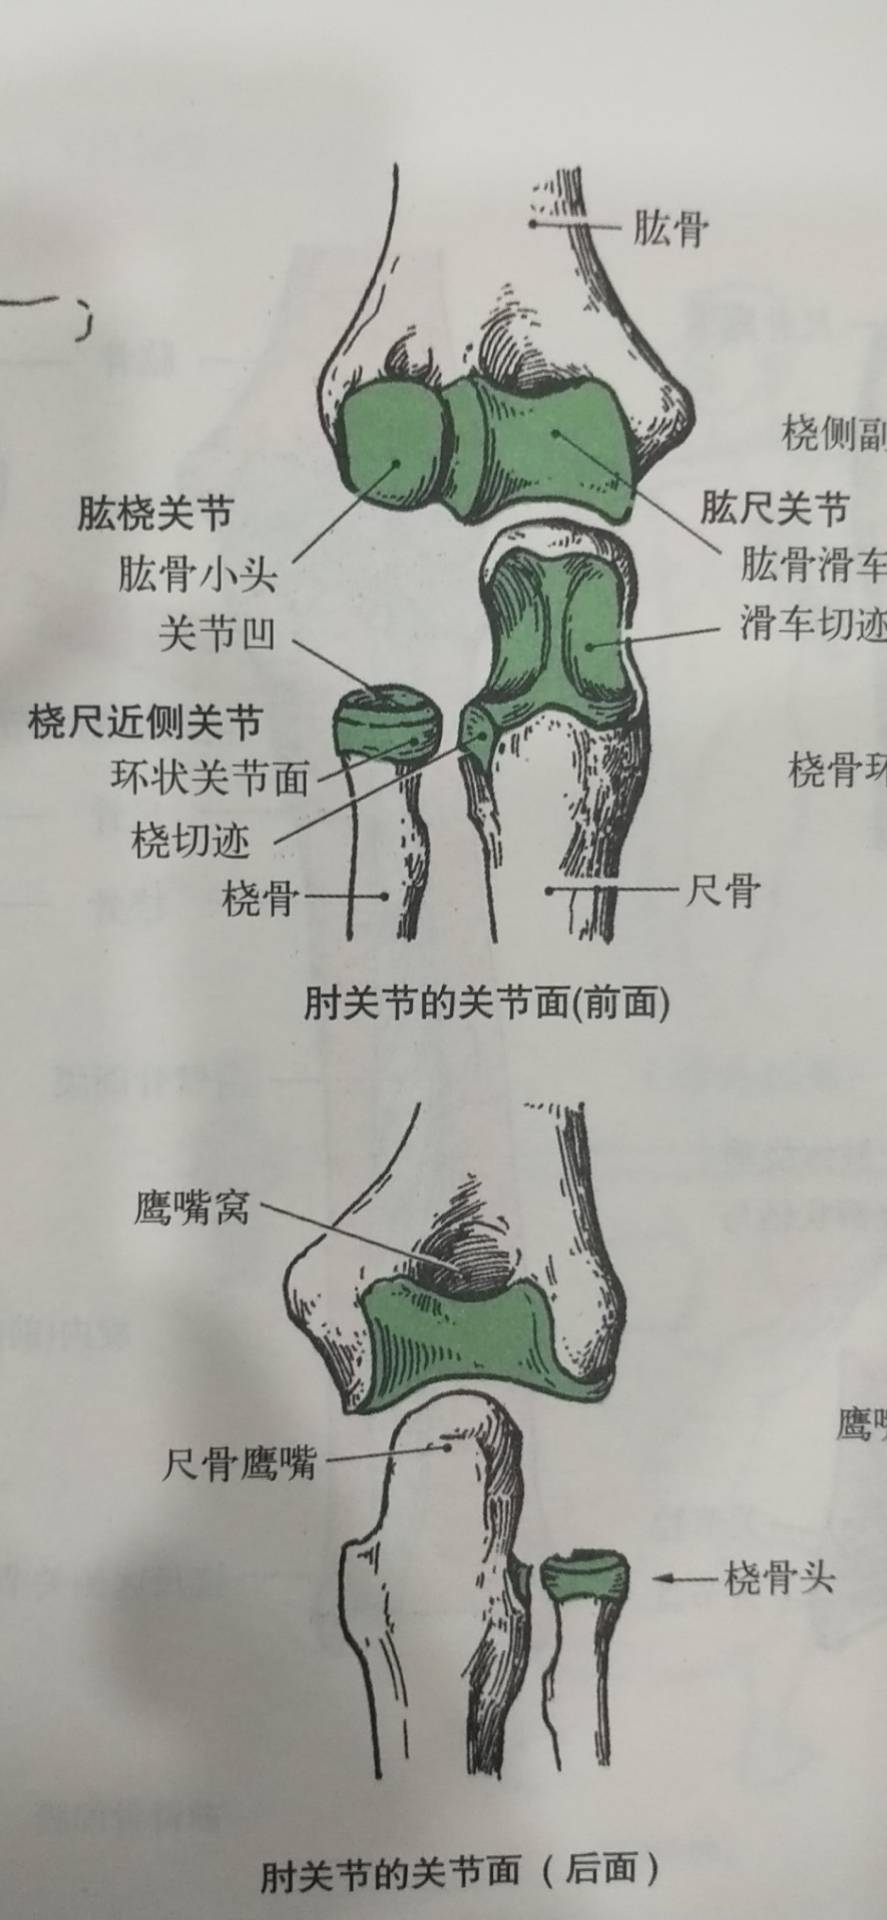 肱尺关节:由肱骨的滑车与尺骨的滑车切迹构成,属于滑车关节,能做